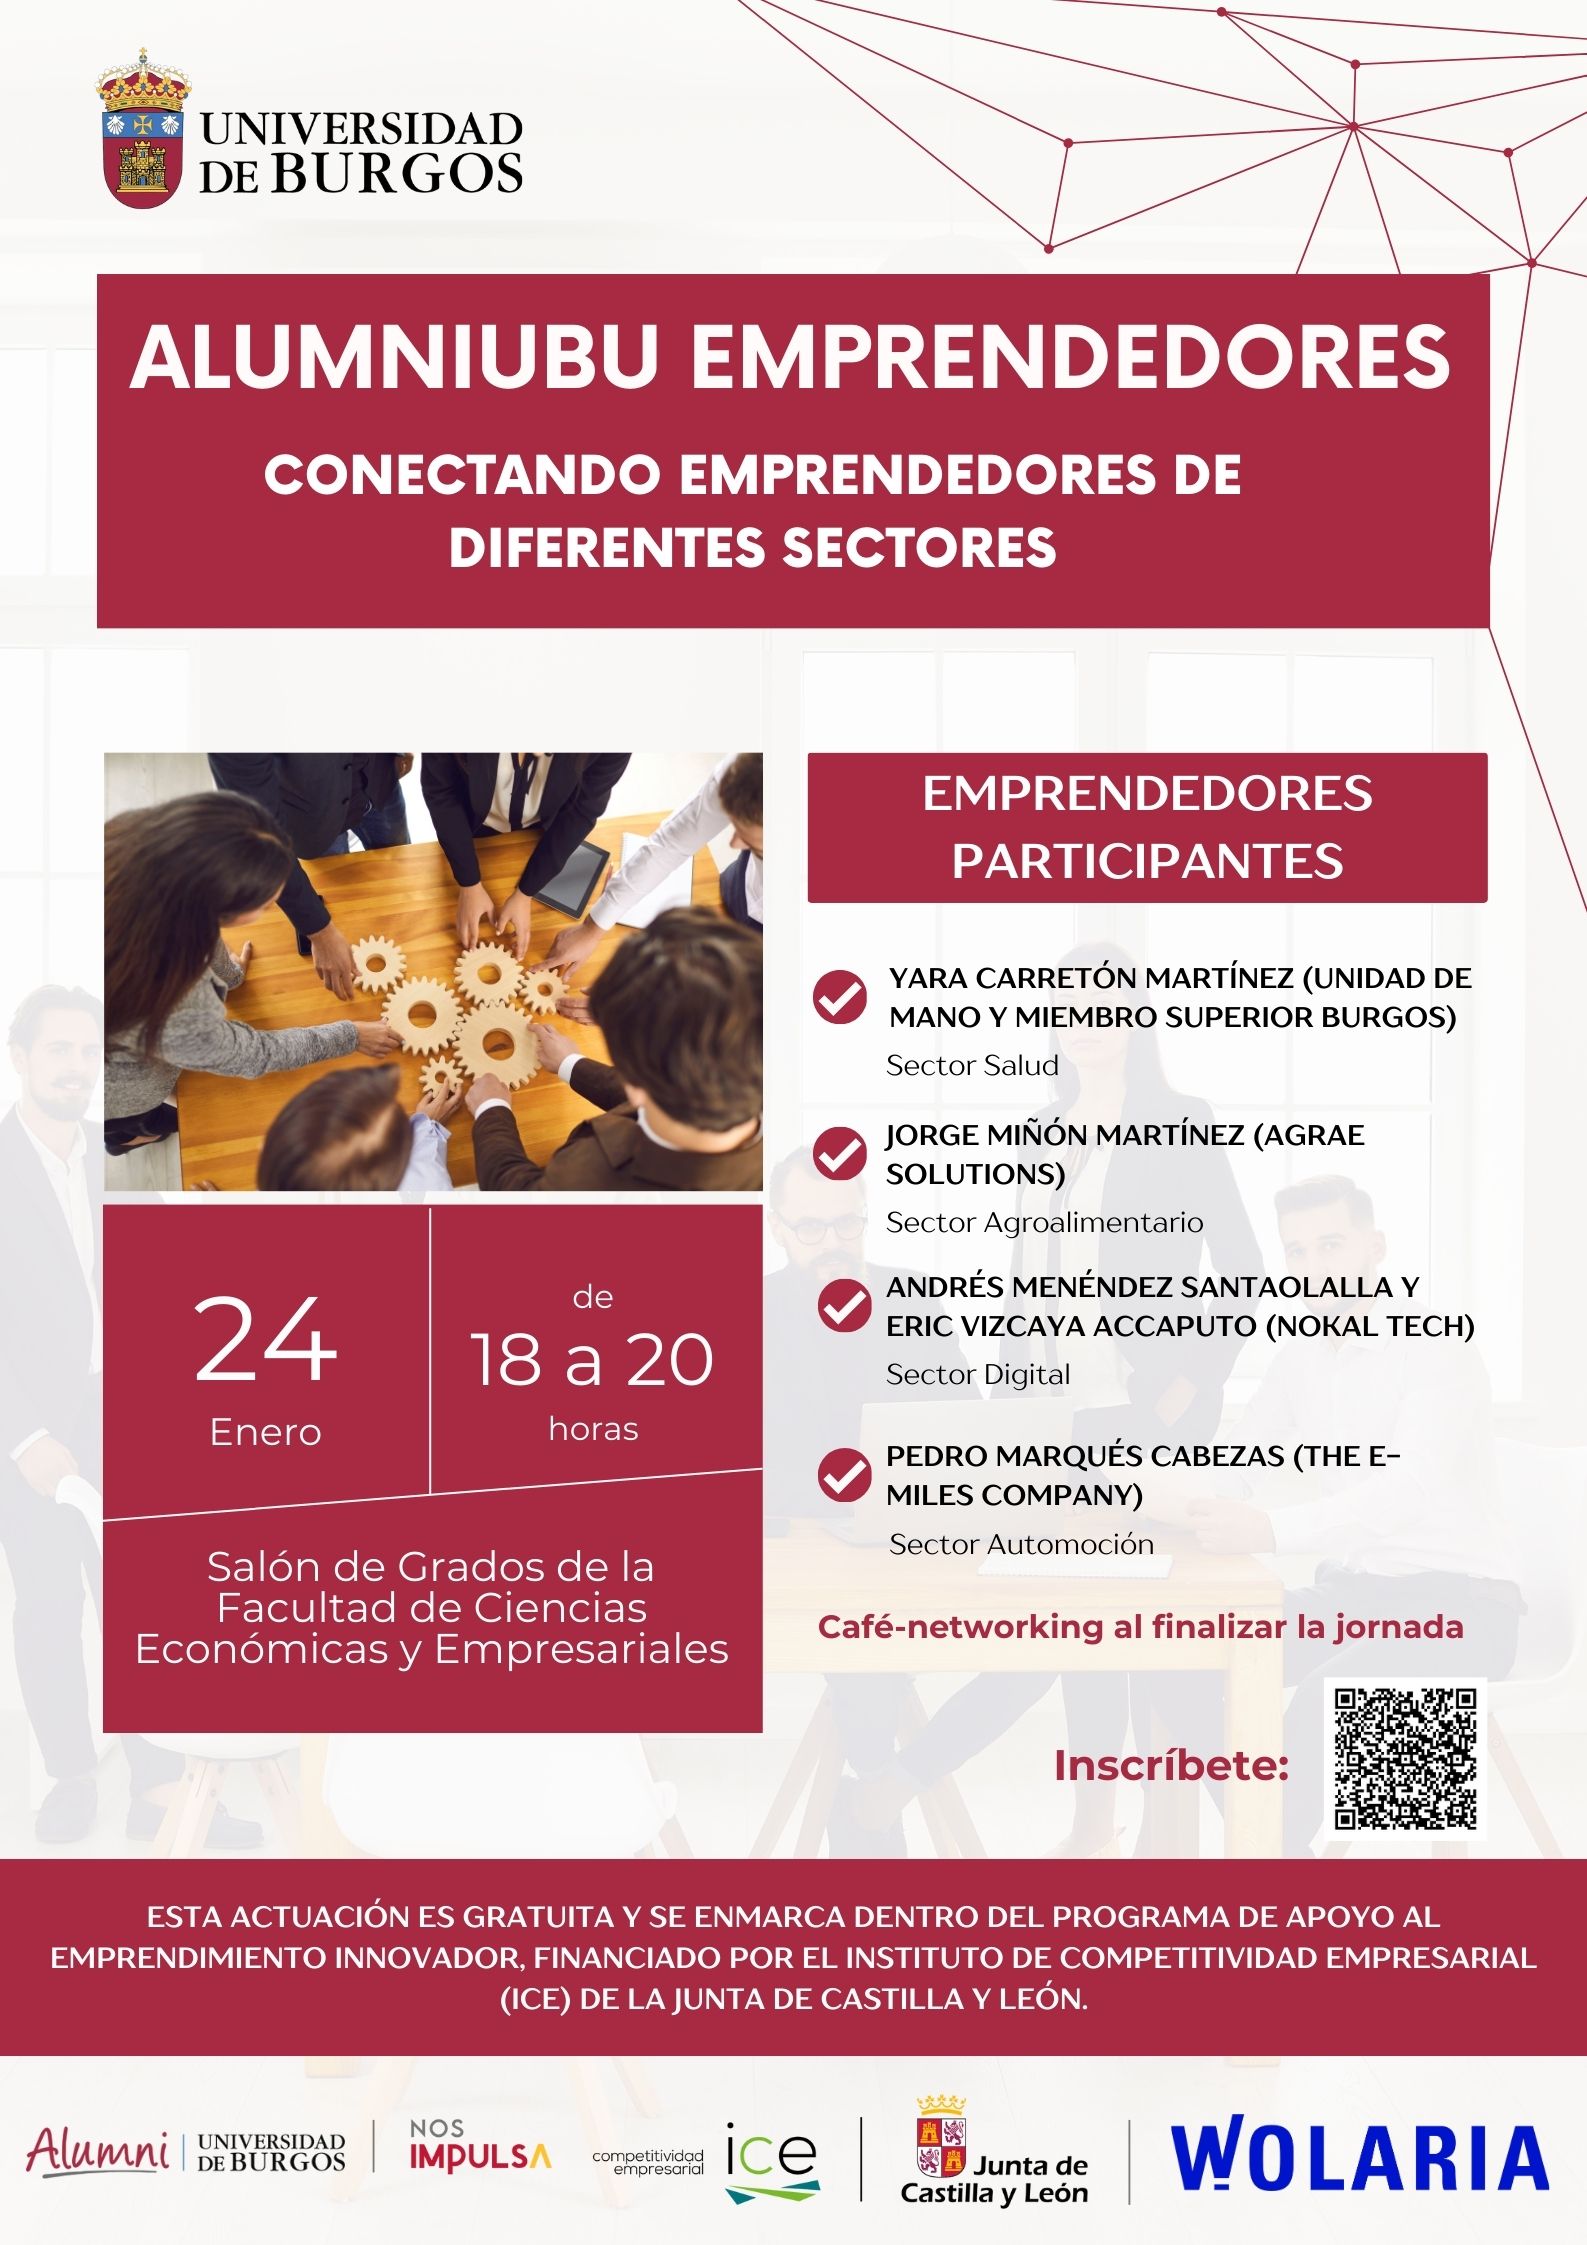 AlumniUBU Emprendedores